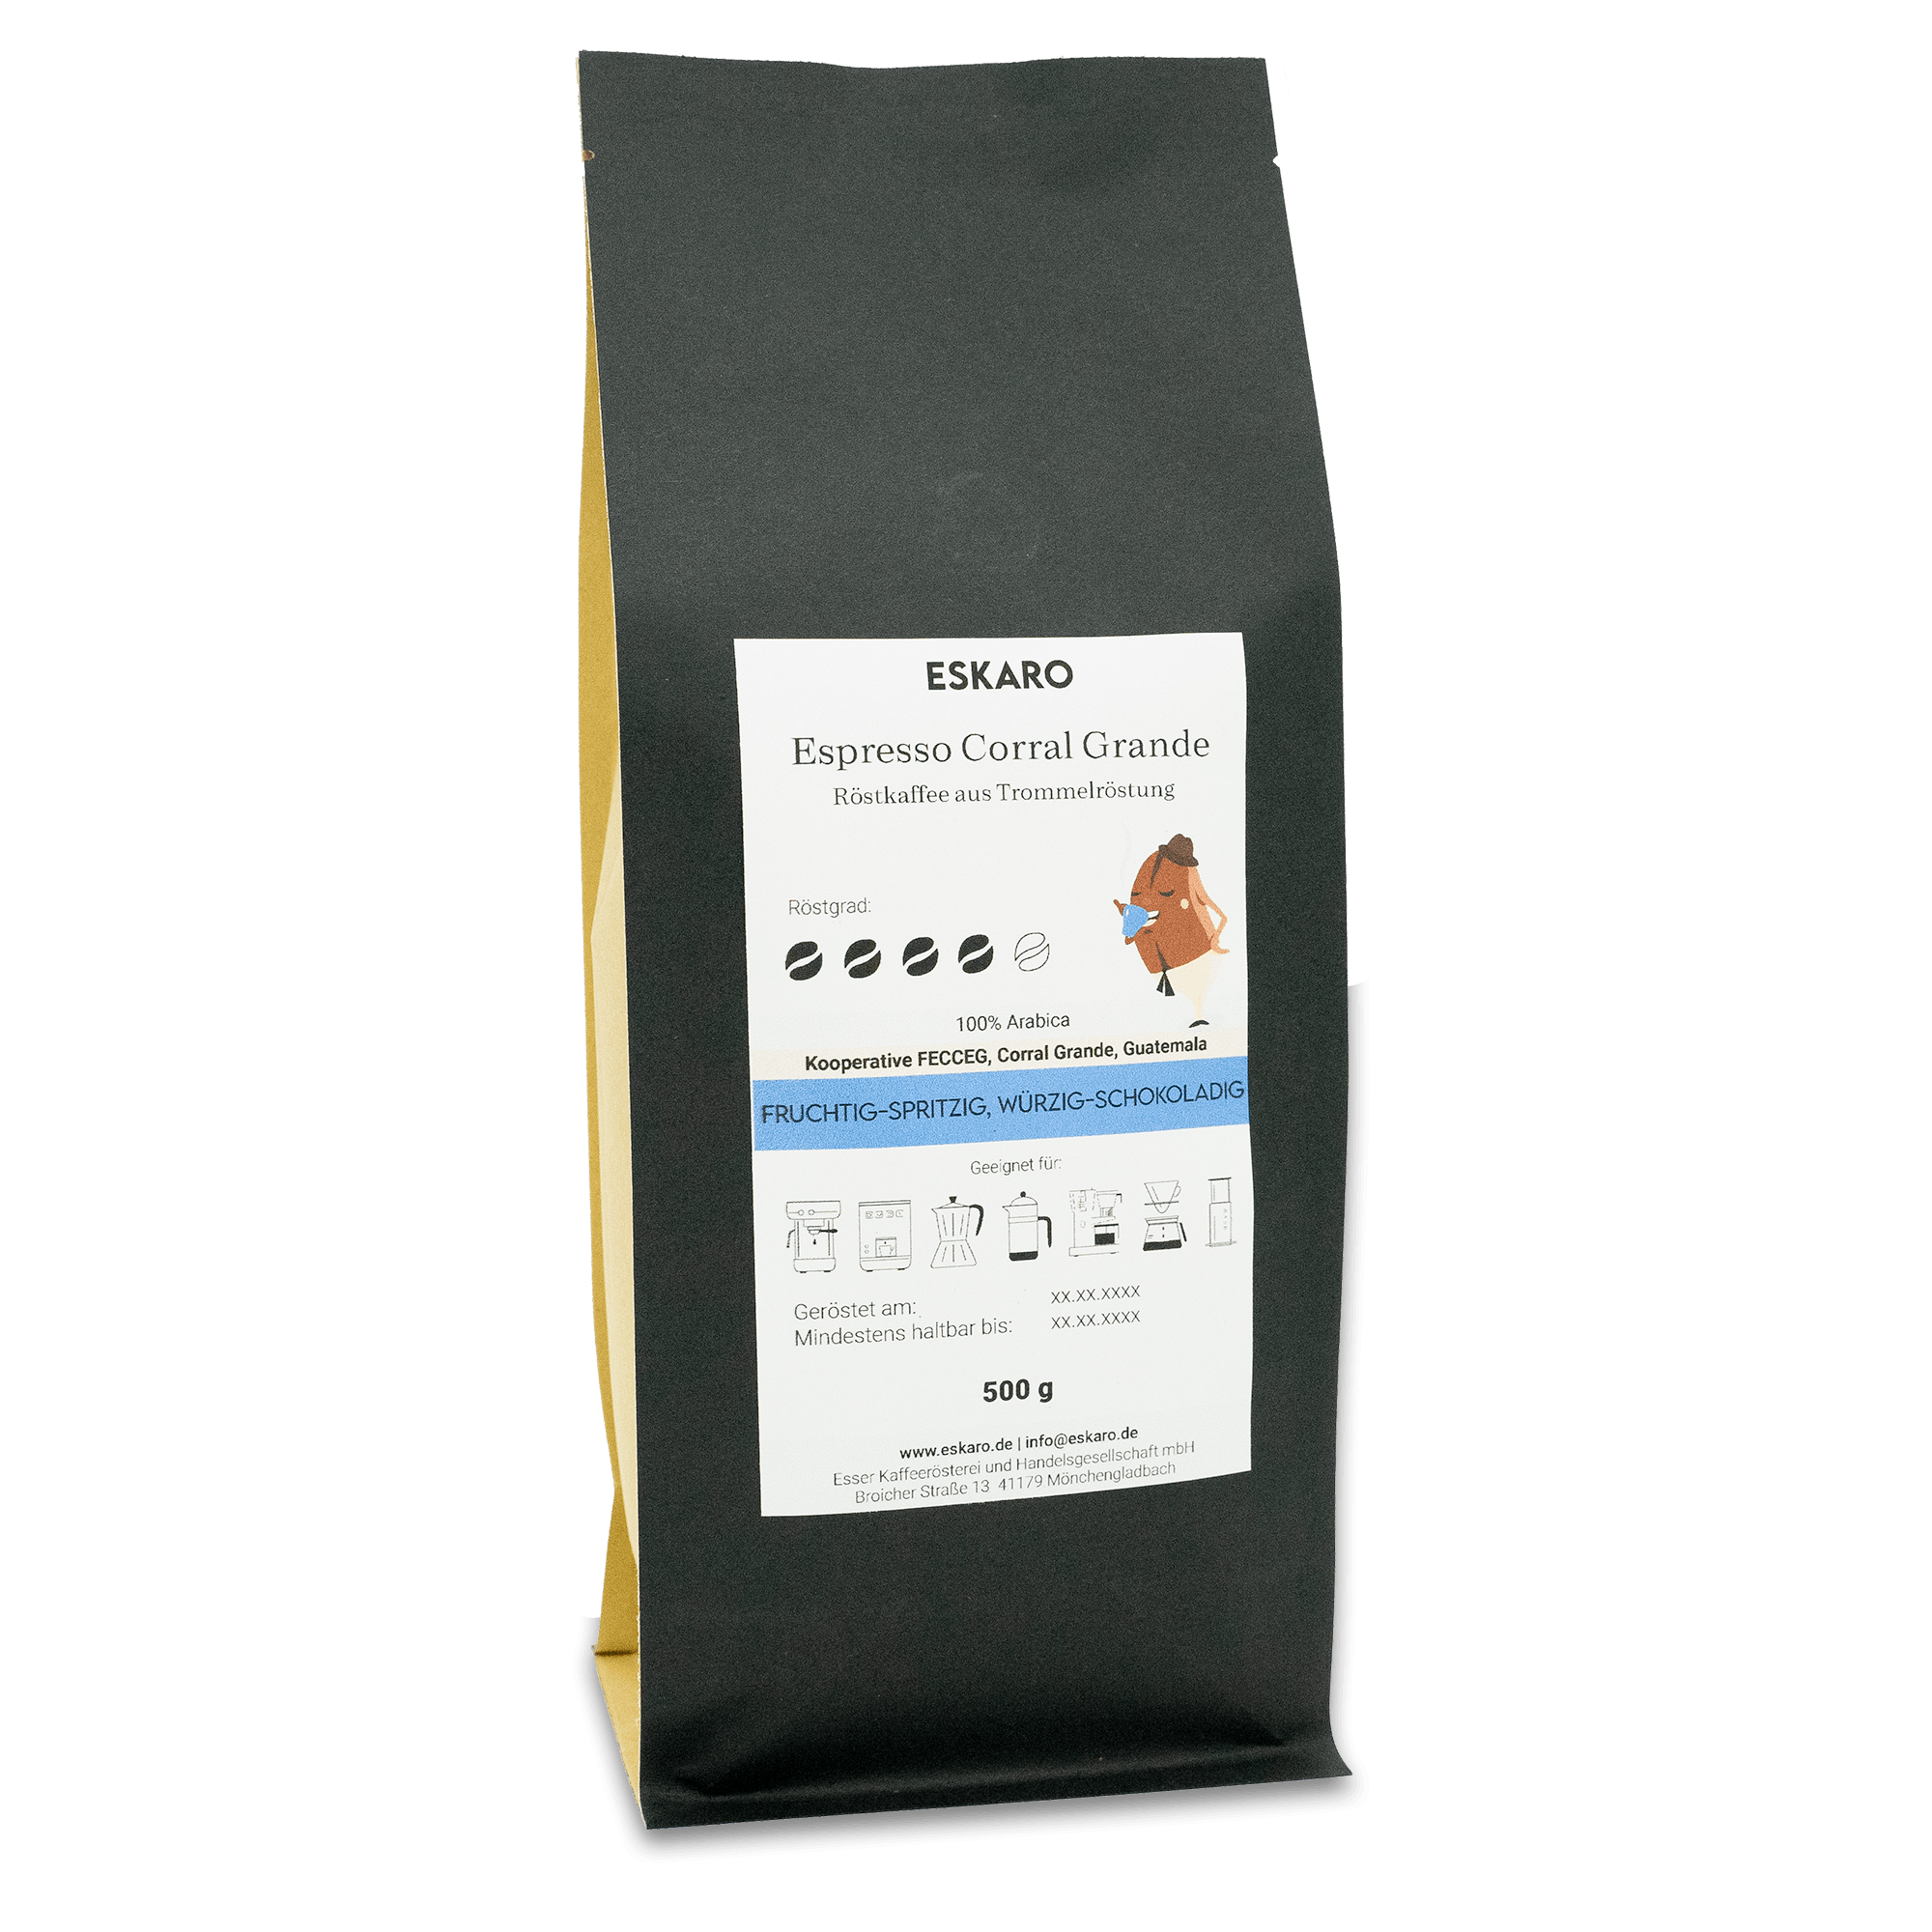 Eskaro Espresso Corral Grande - Eskaro - Esser Kaffeerösterei und Handelsgesellschaft mbH